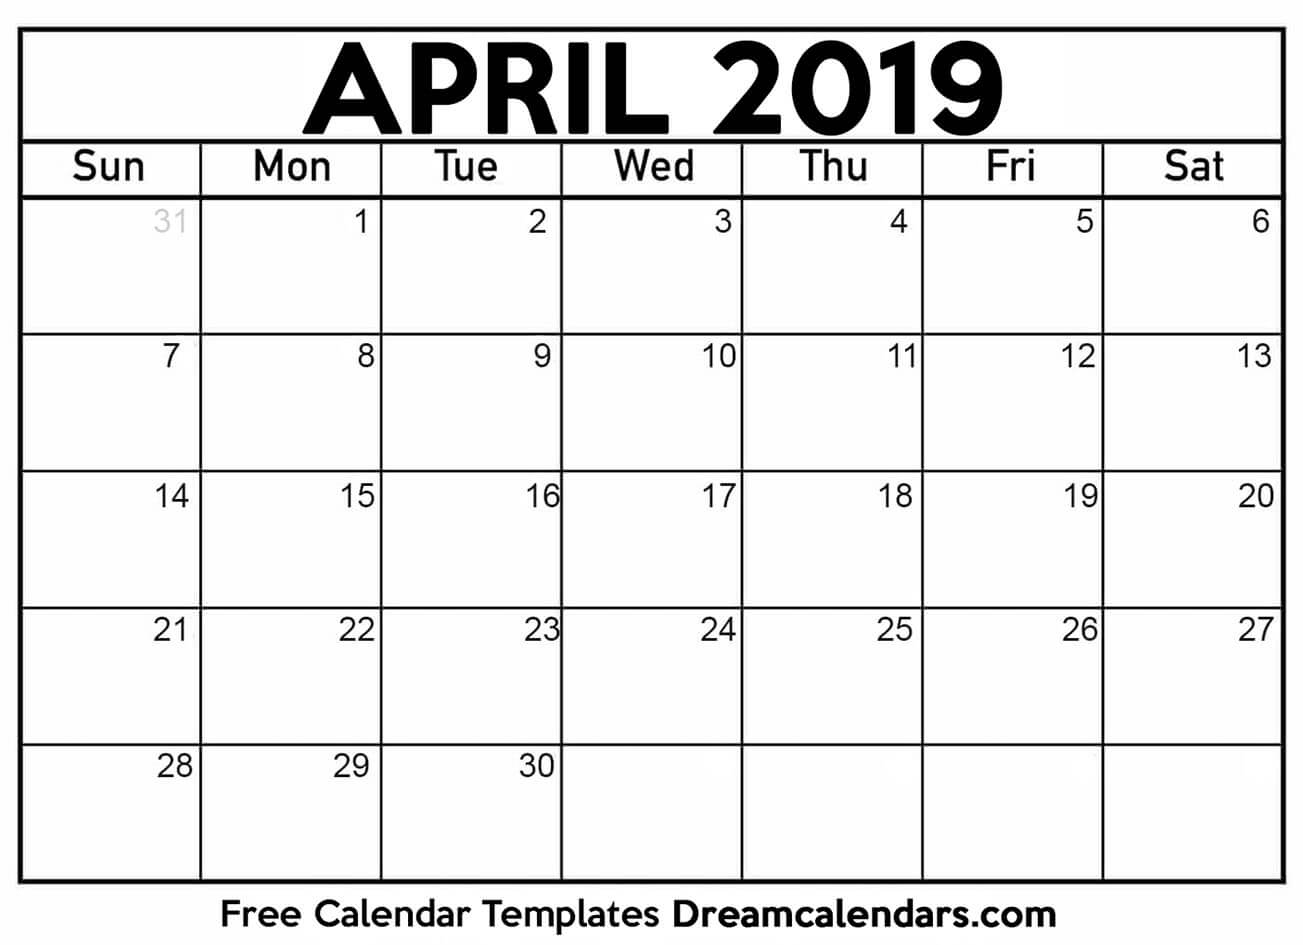 Free April 2019 Printable Calendar | Dream Calendars